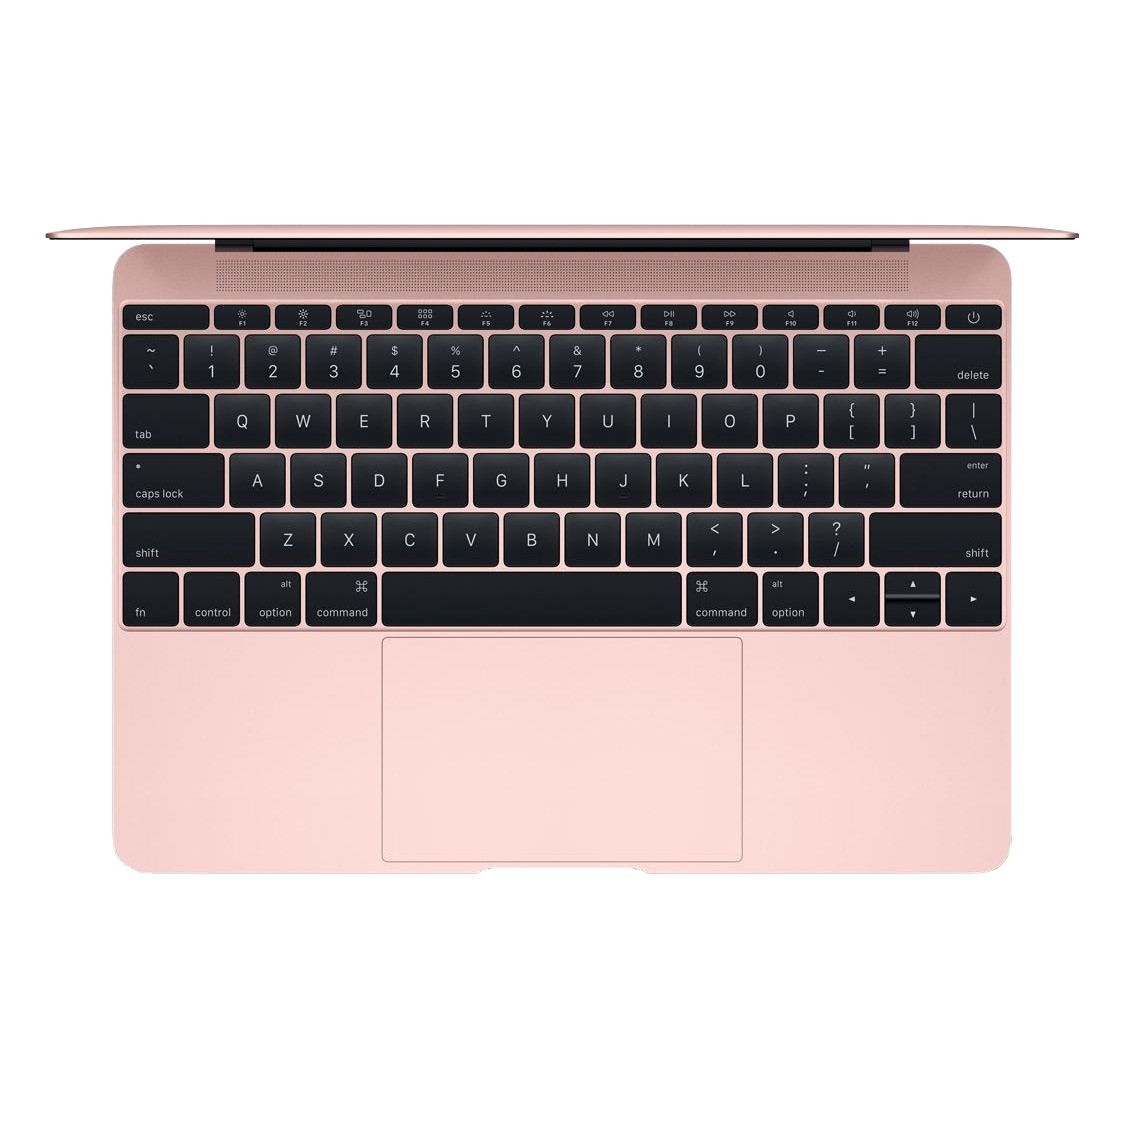 Apple MacBook 12 Rose Gold 2017 (MNYM2) б/у